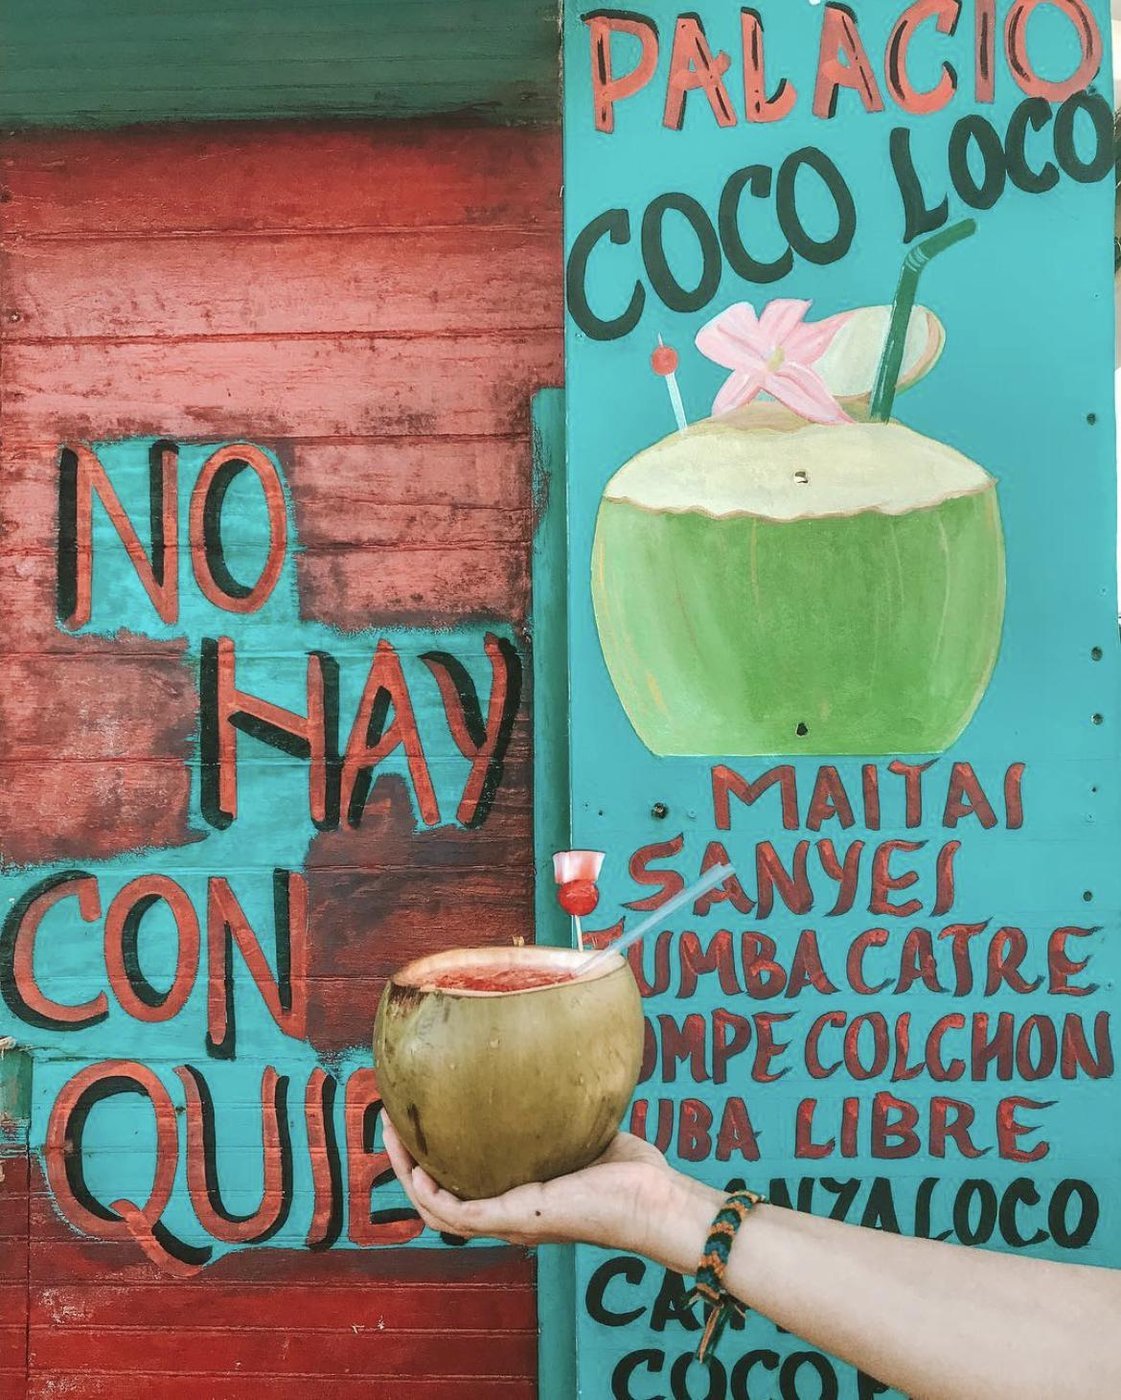 правильный Loco Coco подается только в кокосе, остерегайтесь подделок